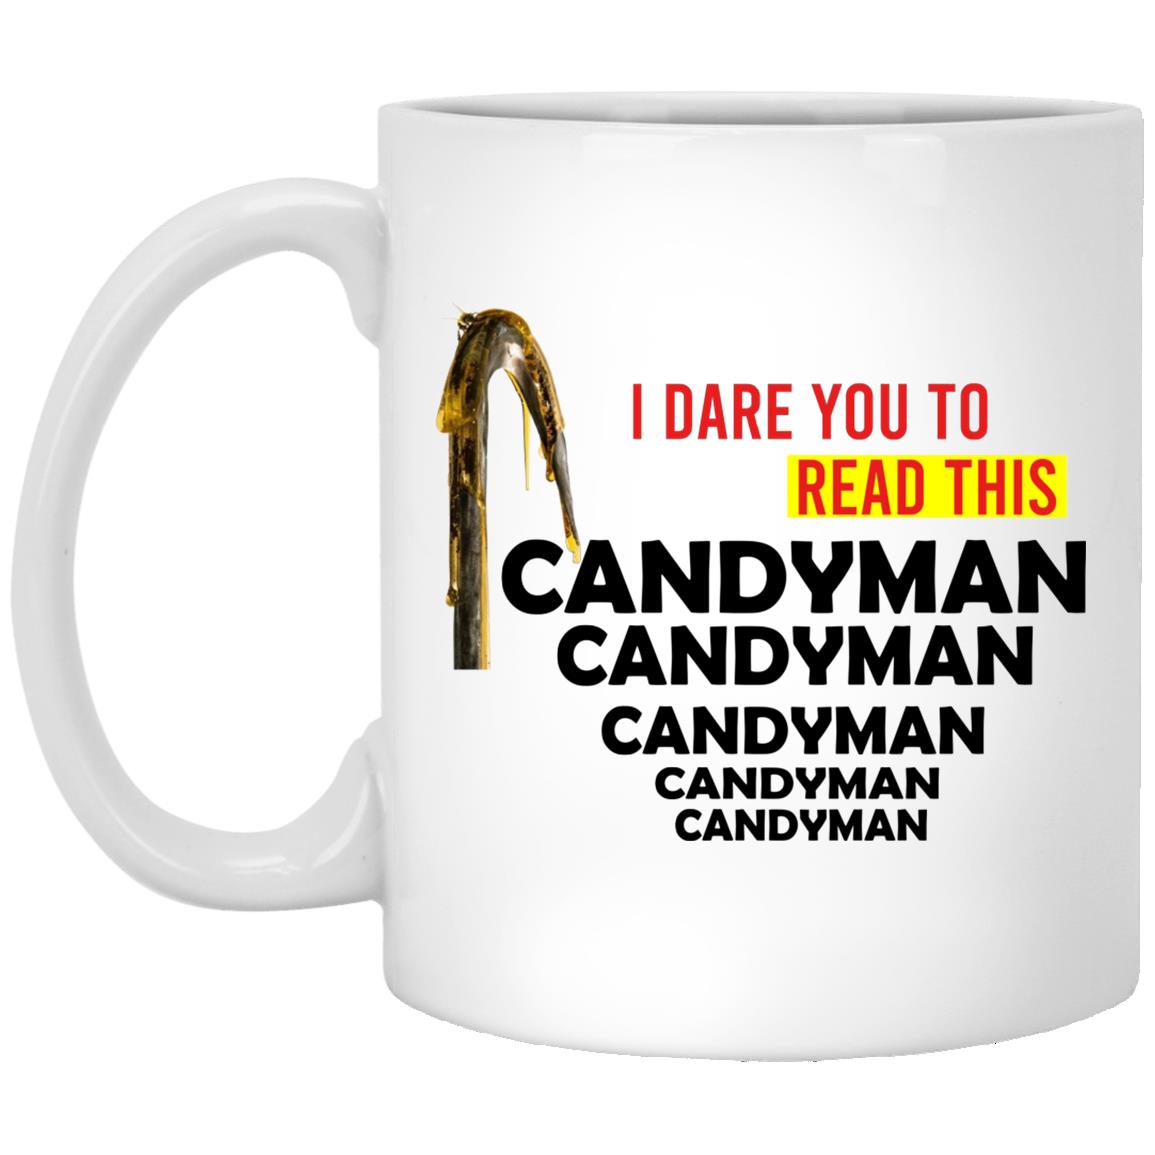 Candy-Man 5x  Coffee Mug  (11oz)